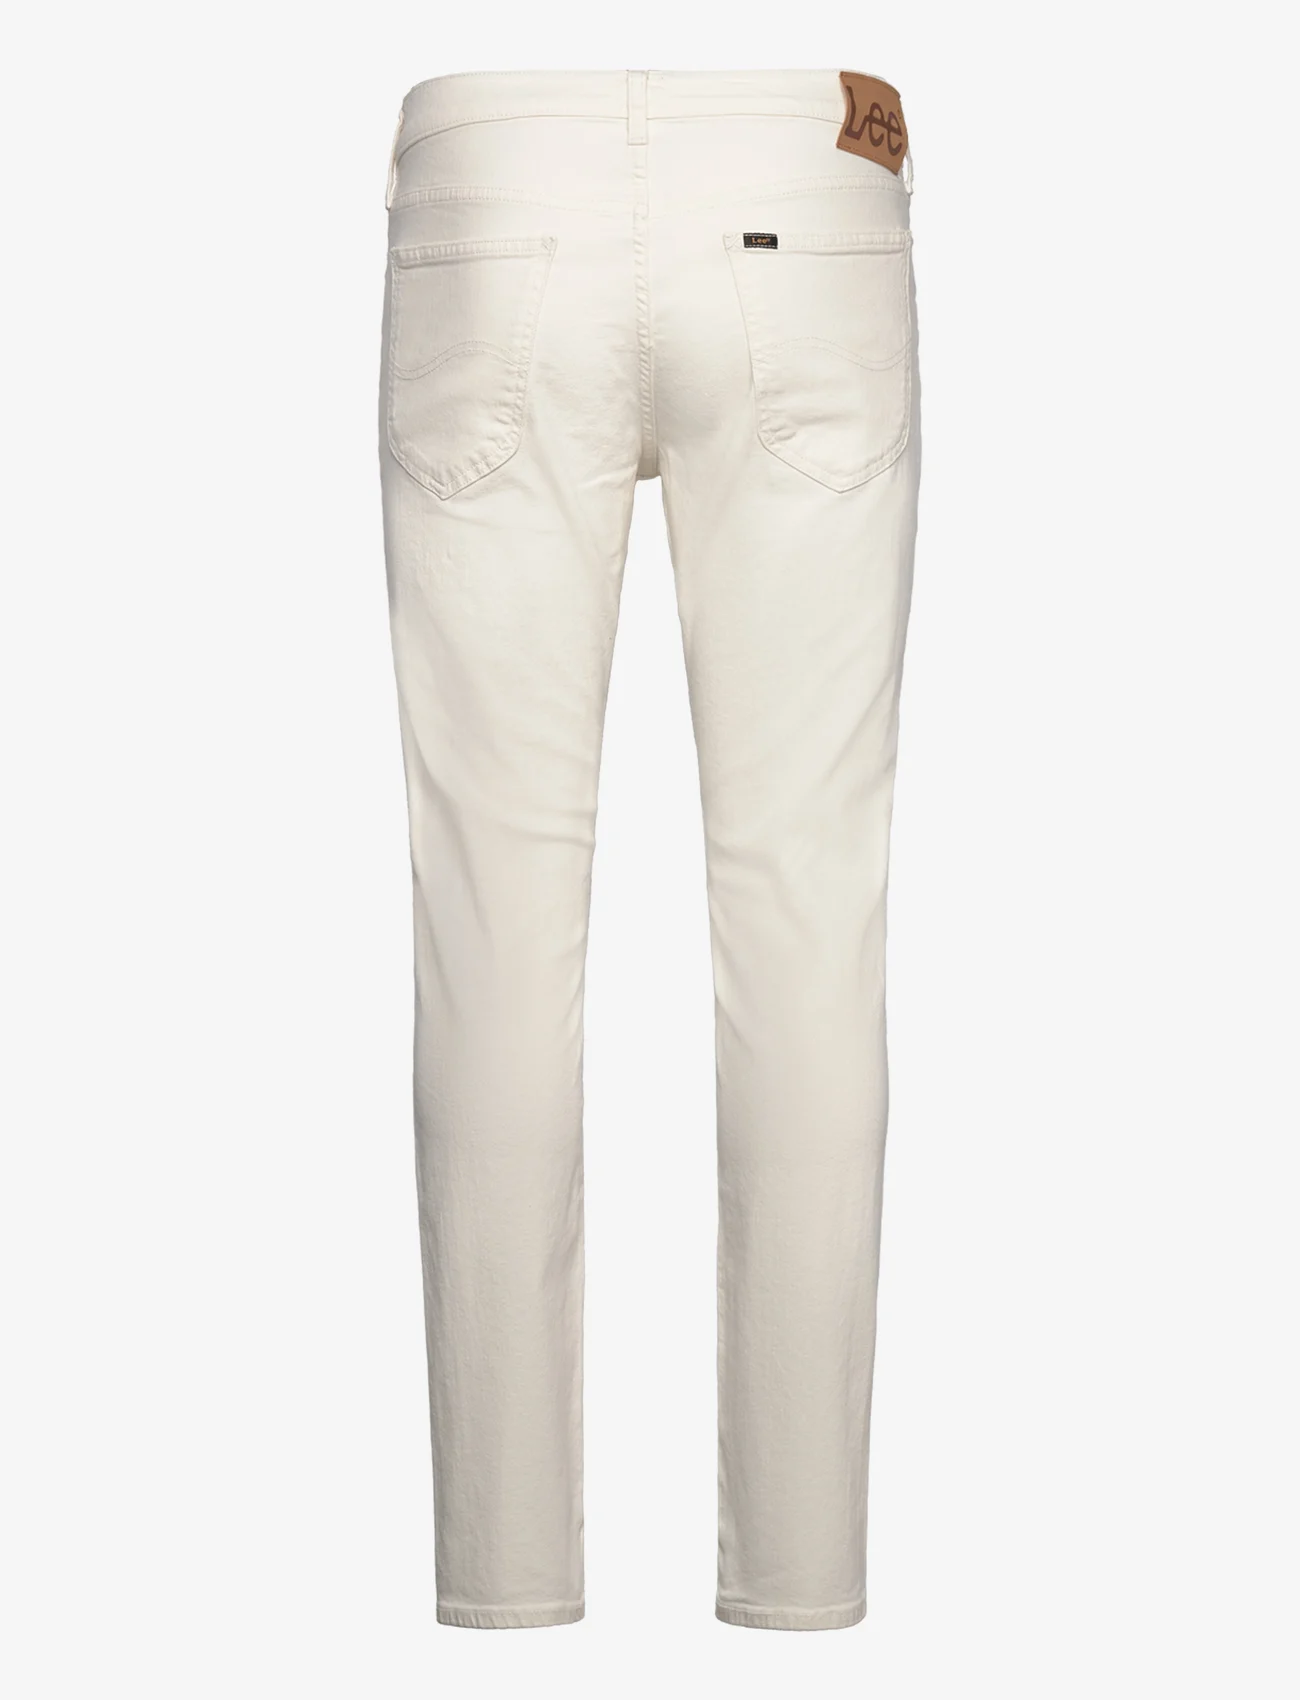 Lee Jeans - DAREN ZIP FLY - regular jeans - ecru - 1